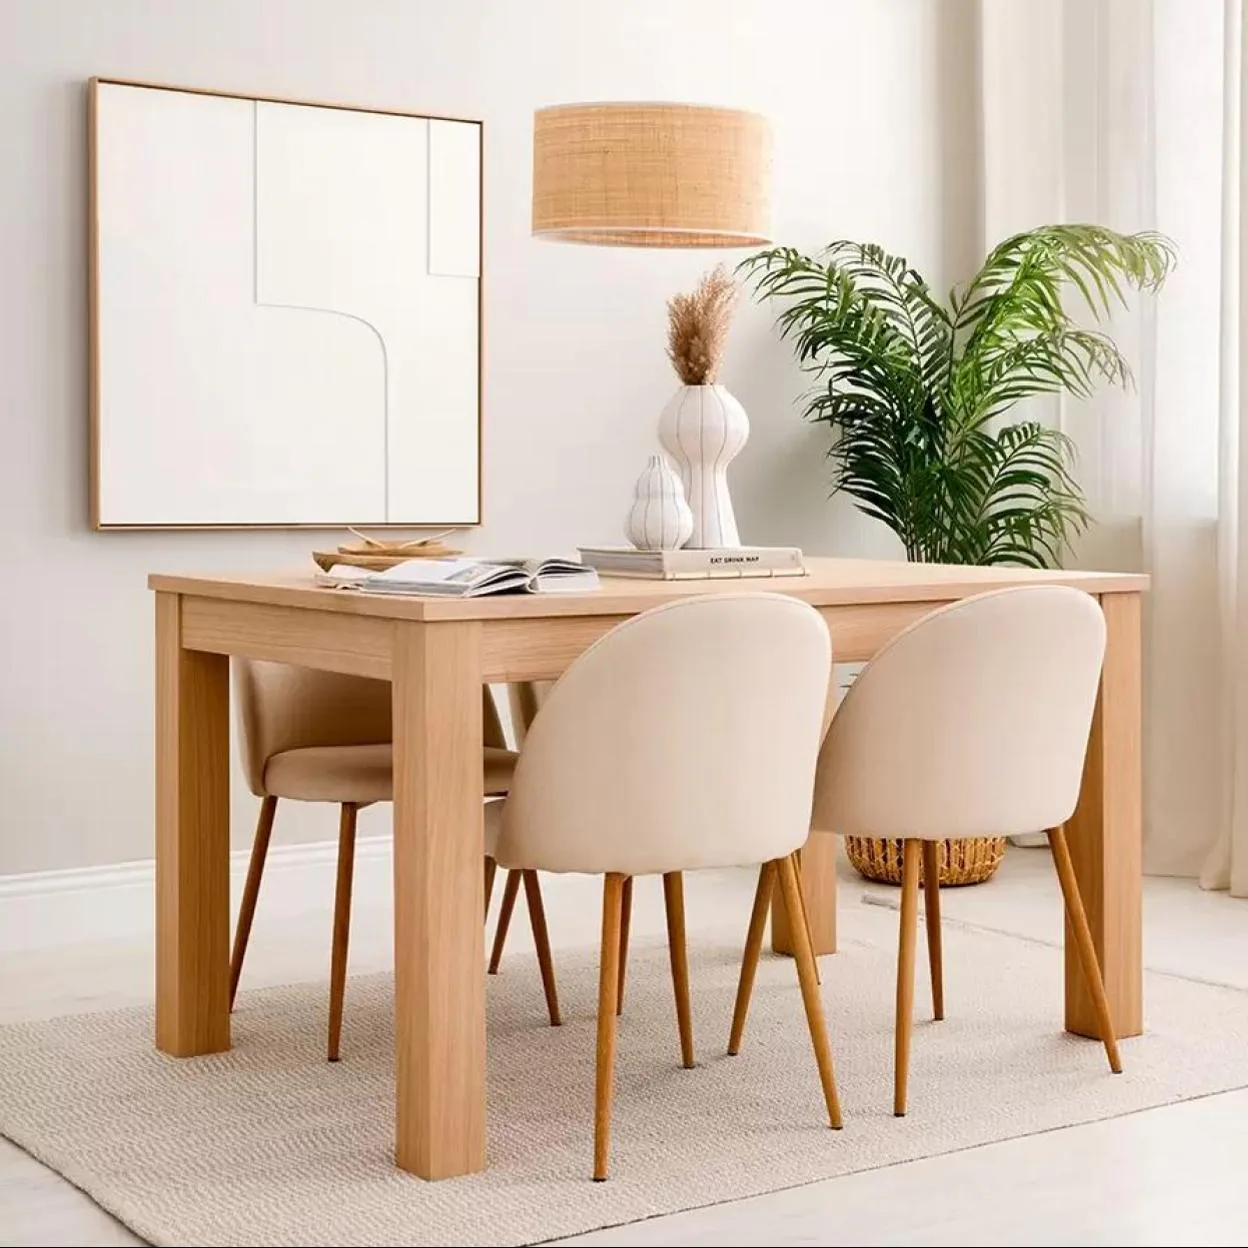 Estas las mesas de comedor bonitas y baratas el El Corte Inglés Ikea | Mujer